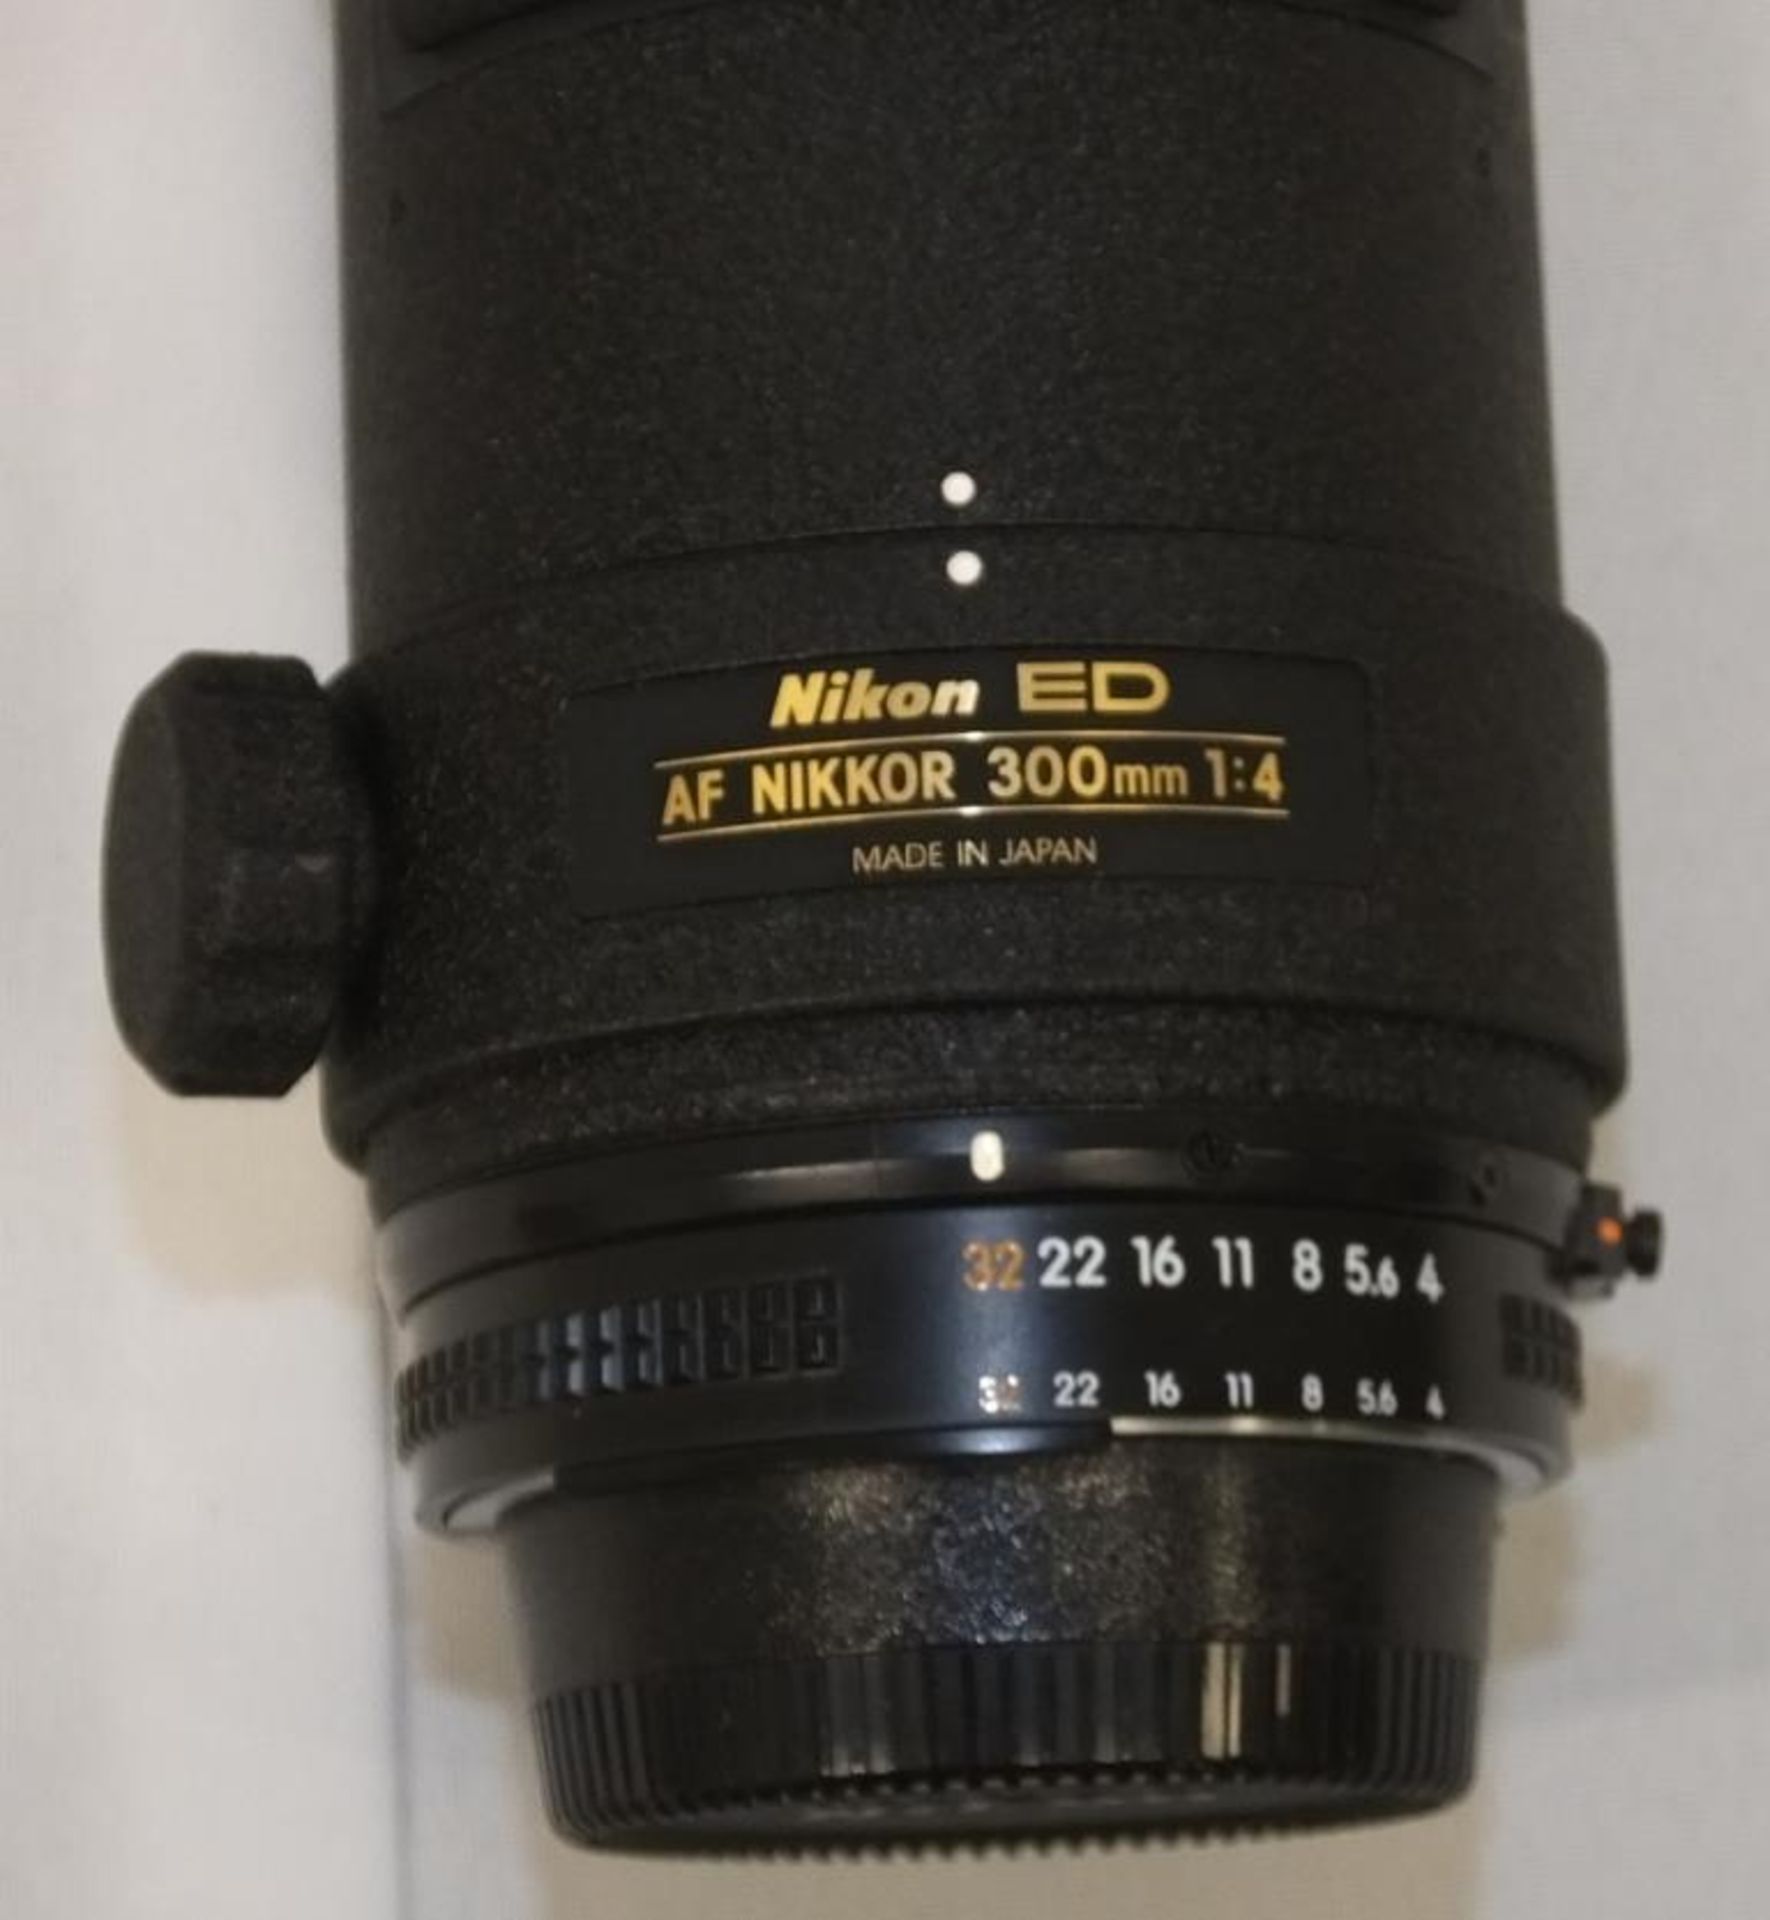 Nikon ED AF Nikkor 300mm - 1:4 Lens - Serial No. 241446 with HOYA 82mm UV(O) Filter in Nikon Case - Image 3 of 5